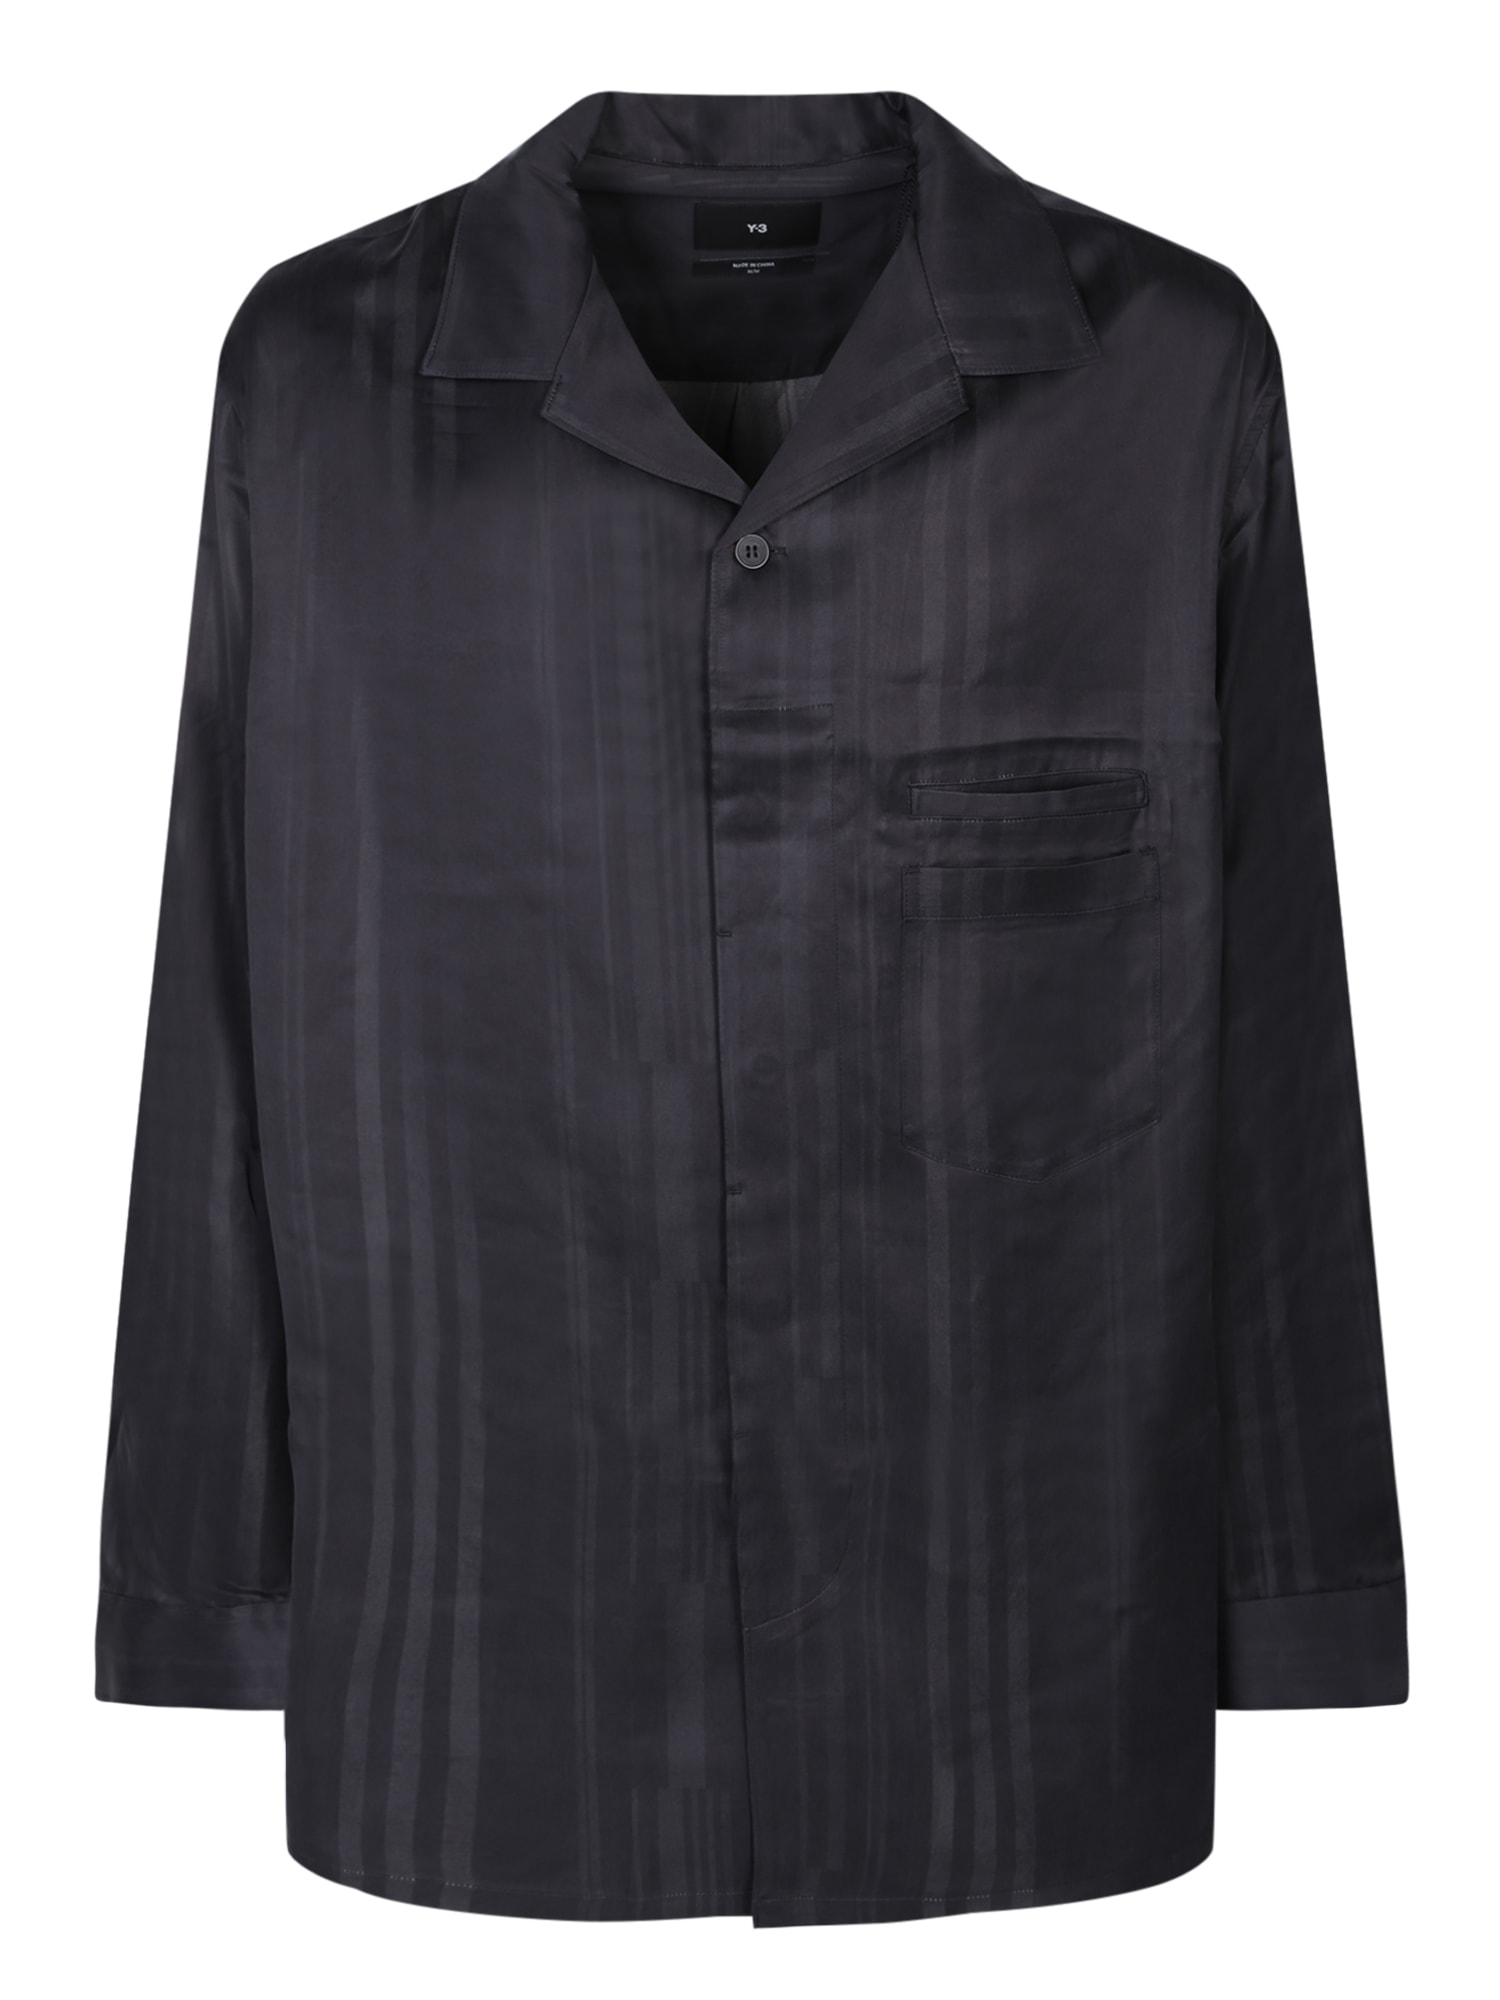 Shirt In Black Polyamide Polyester